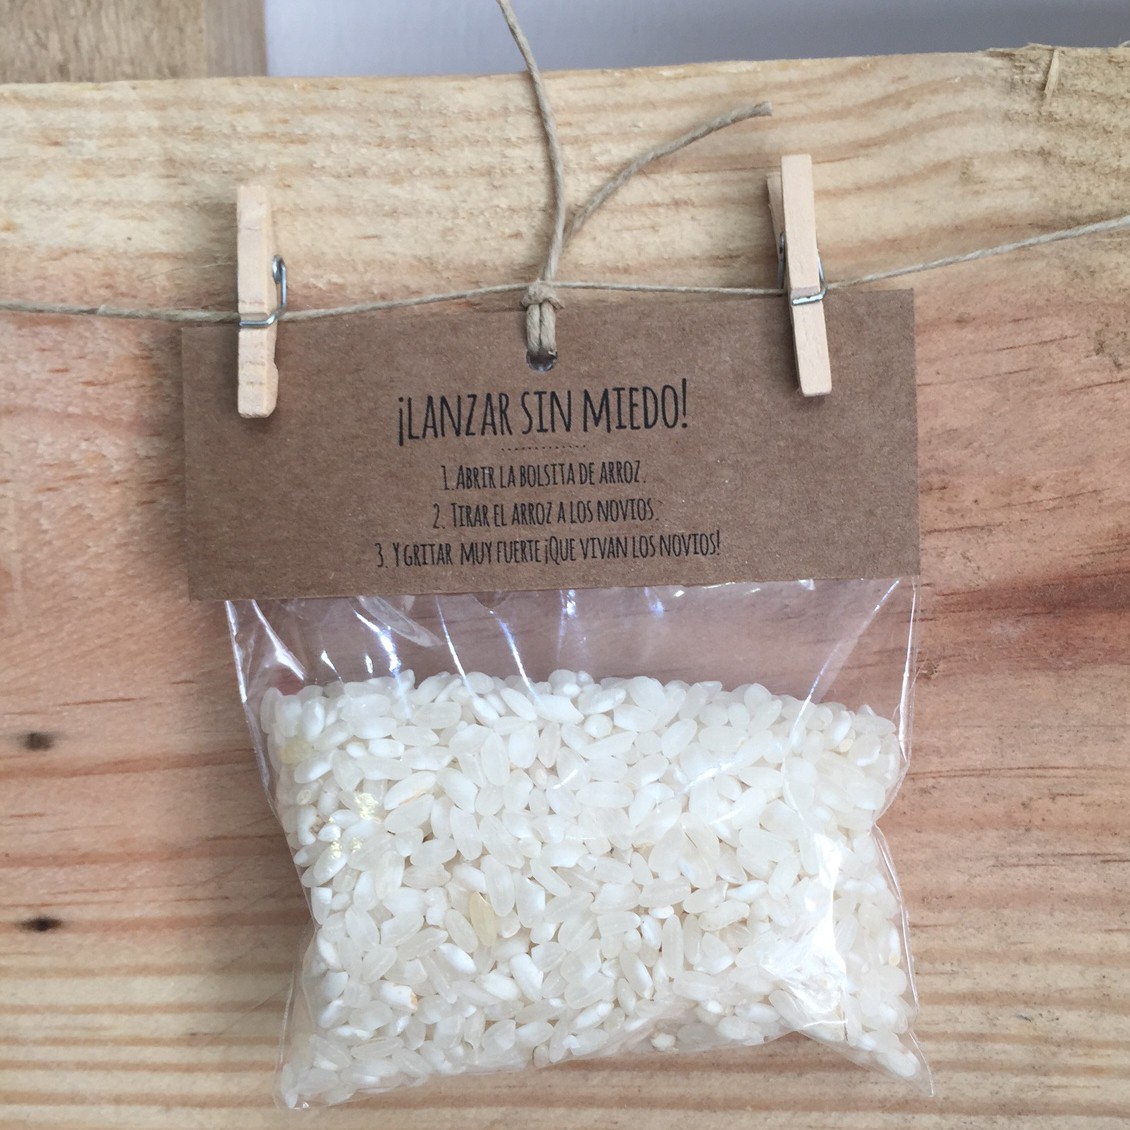 Accesible evolución botón saquitos de arroz personalizados